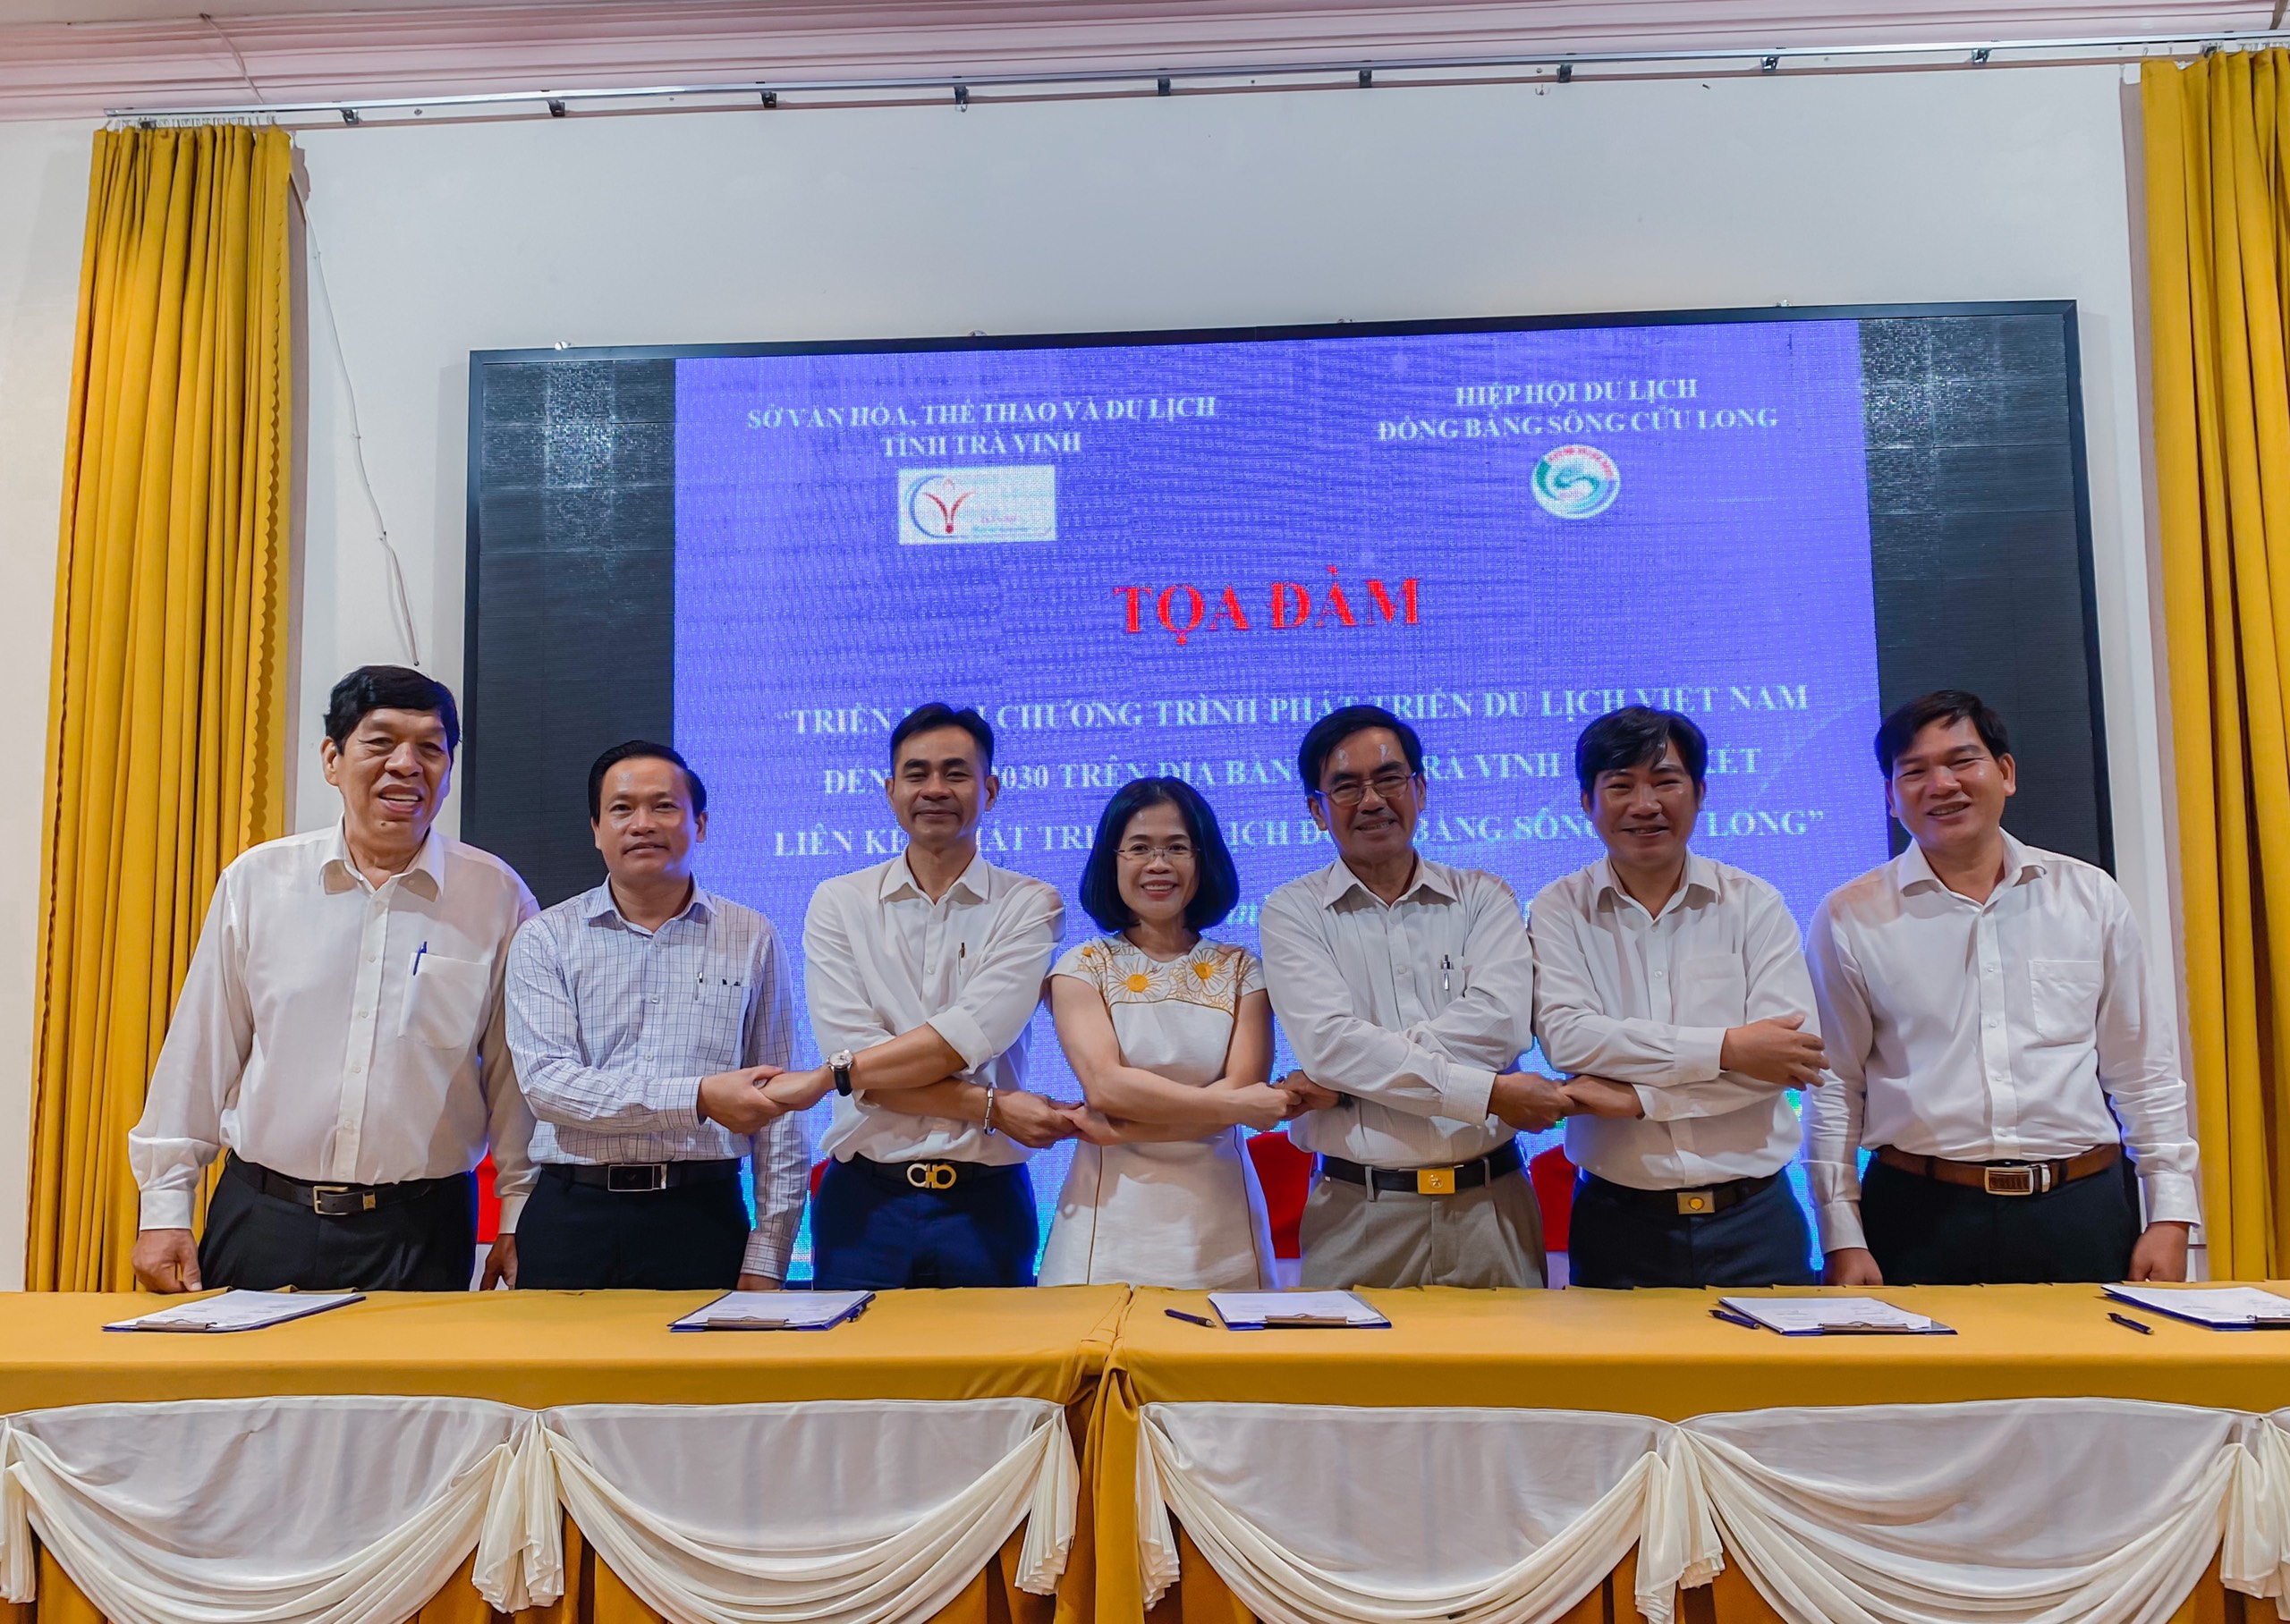 Tọa đàm triển khai Chương trình Phát triển Du lịch Việt Nam tại Trà Vinh và ký kết liên kết Phát triển Du lịch ĐBSCL